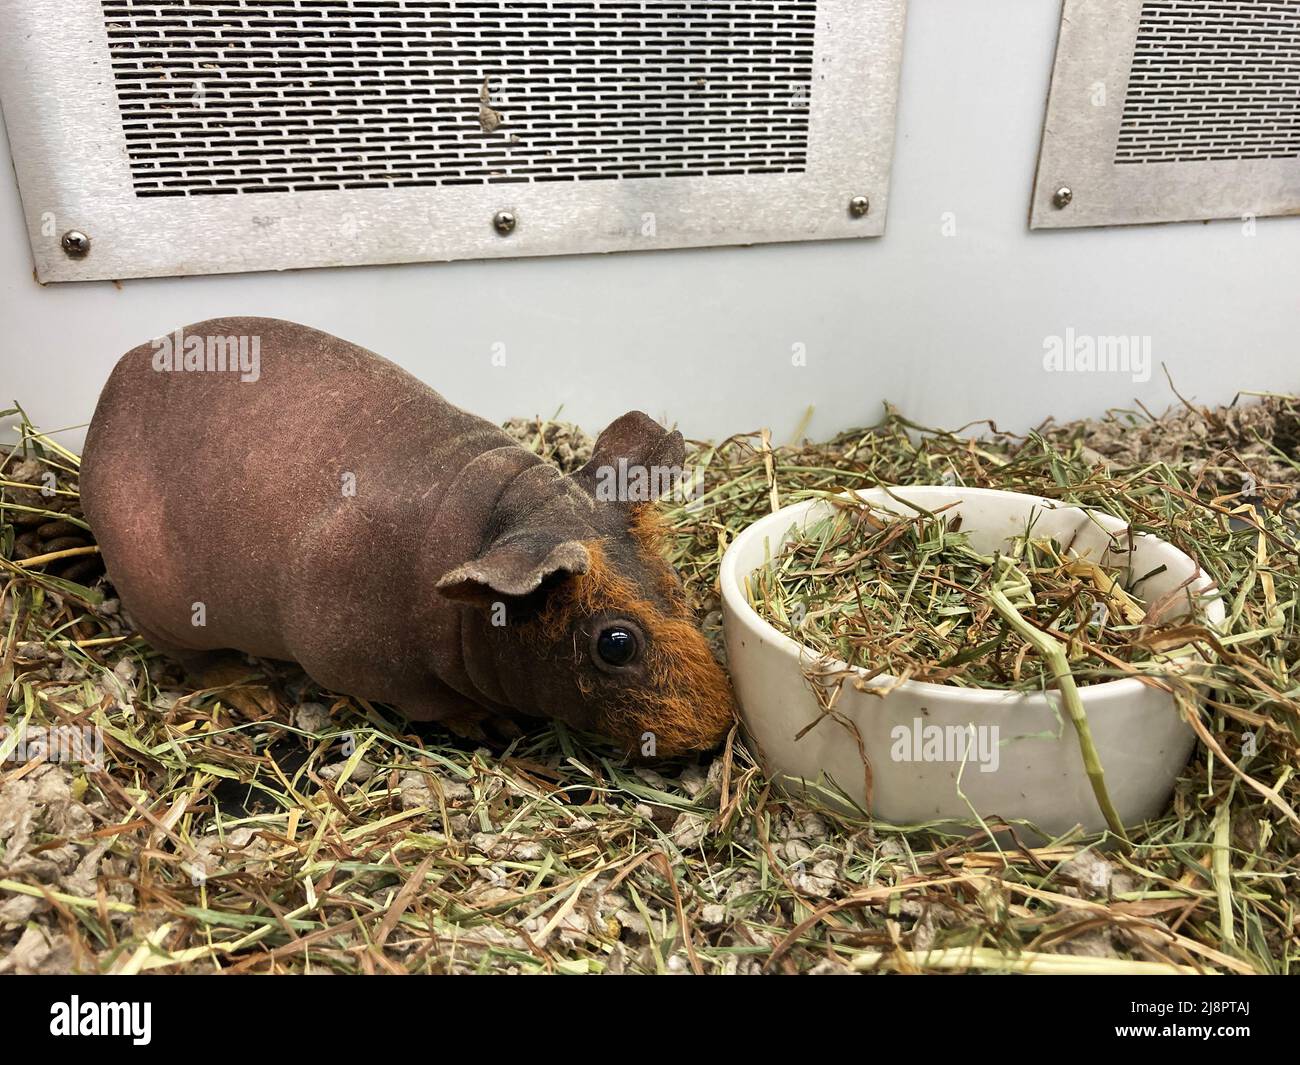 Hairless guinea pig next to feeding bowl. Stock Photo